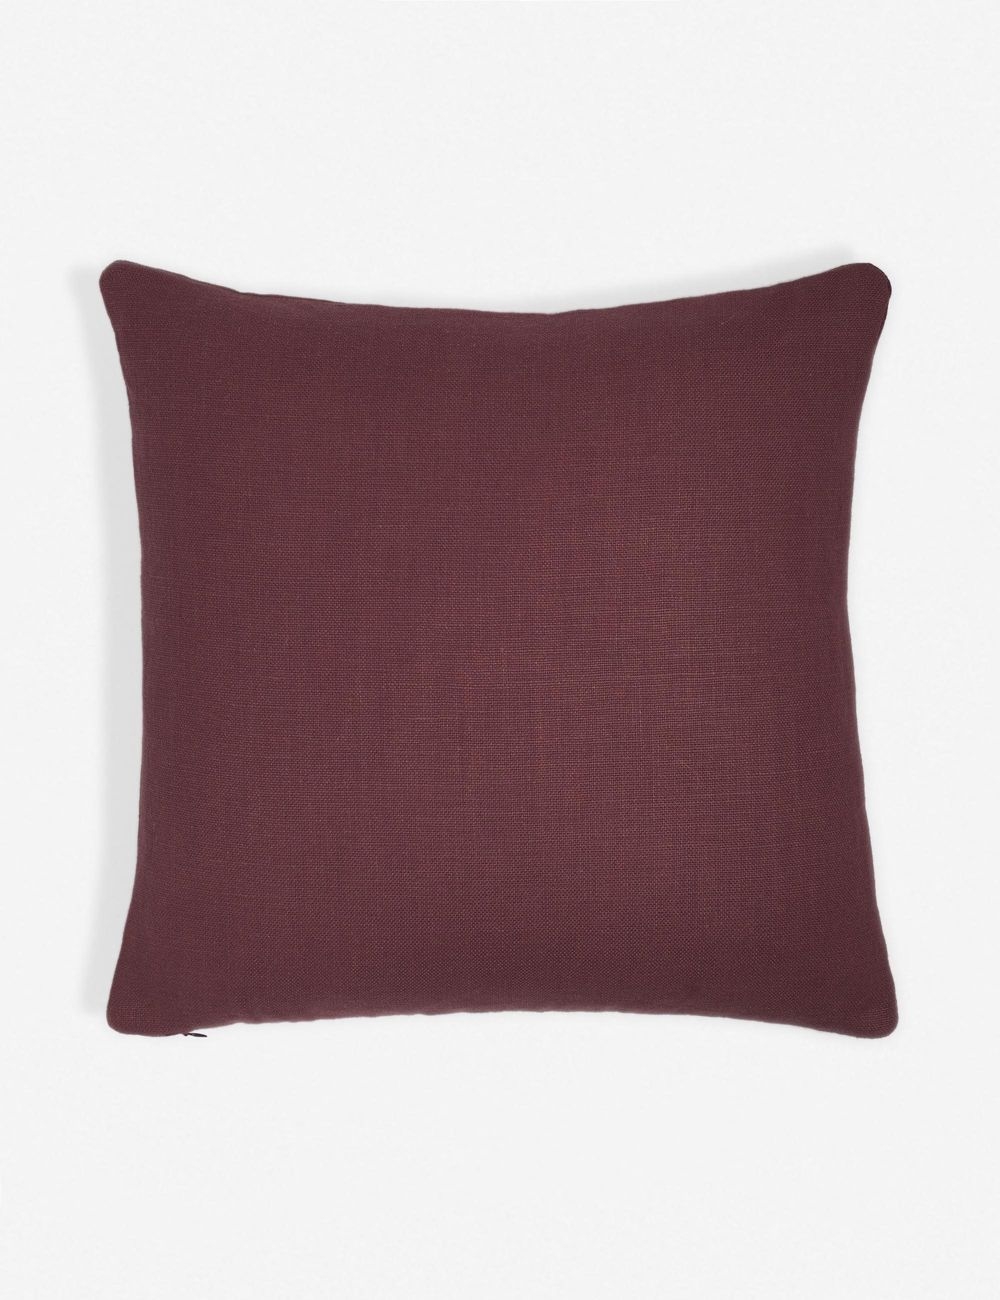 Ines Belgian Linen Pillow, Merlot - Image 0